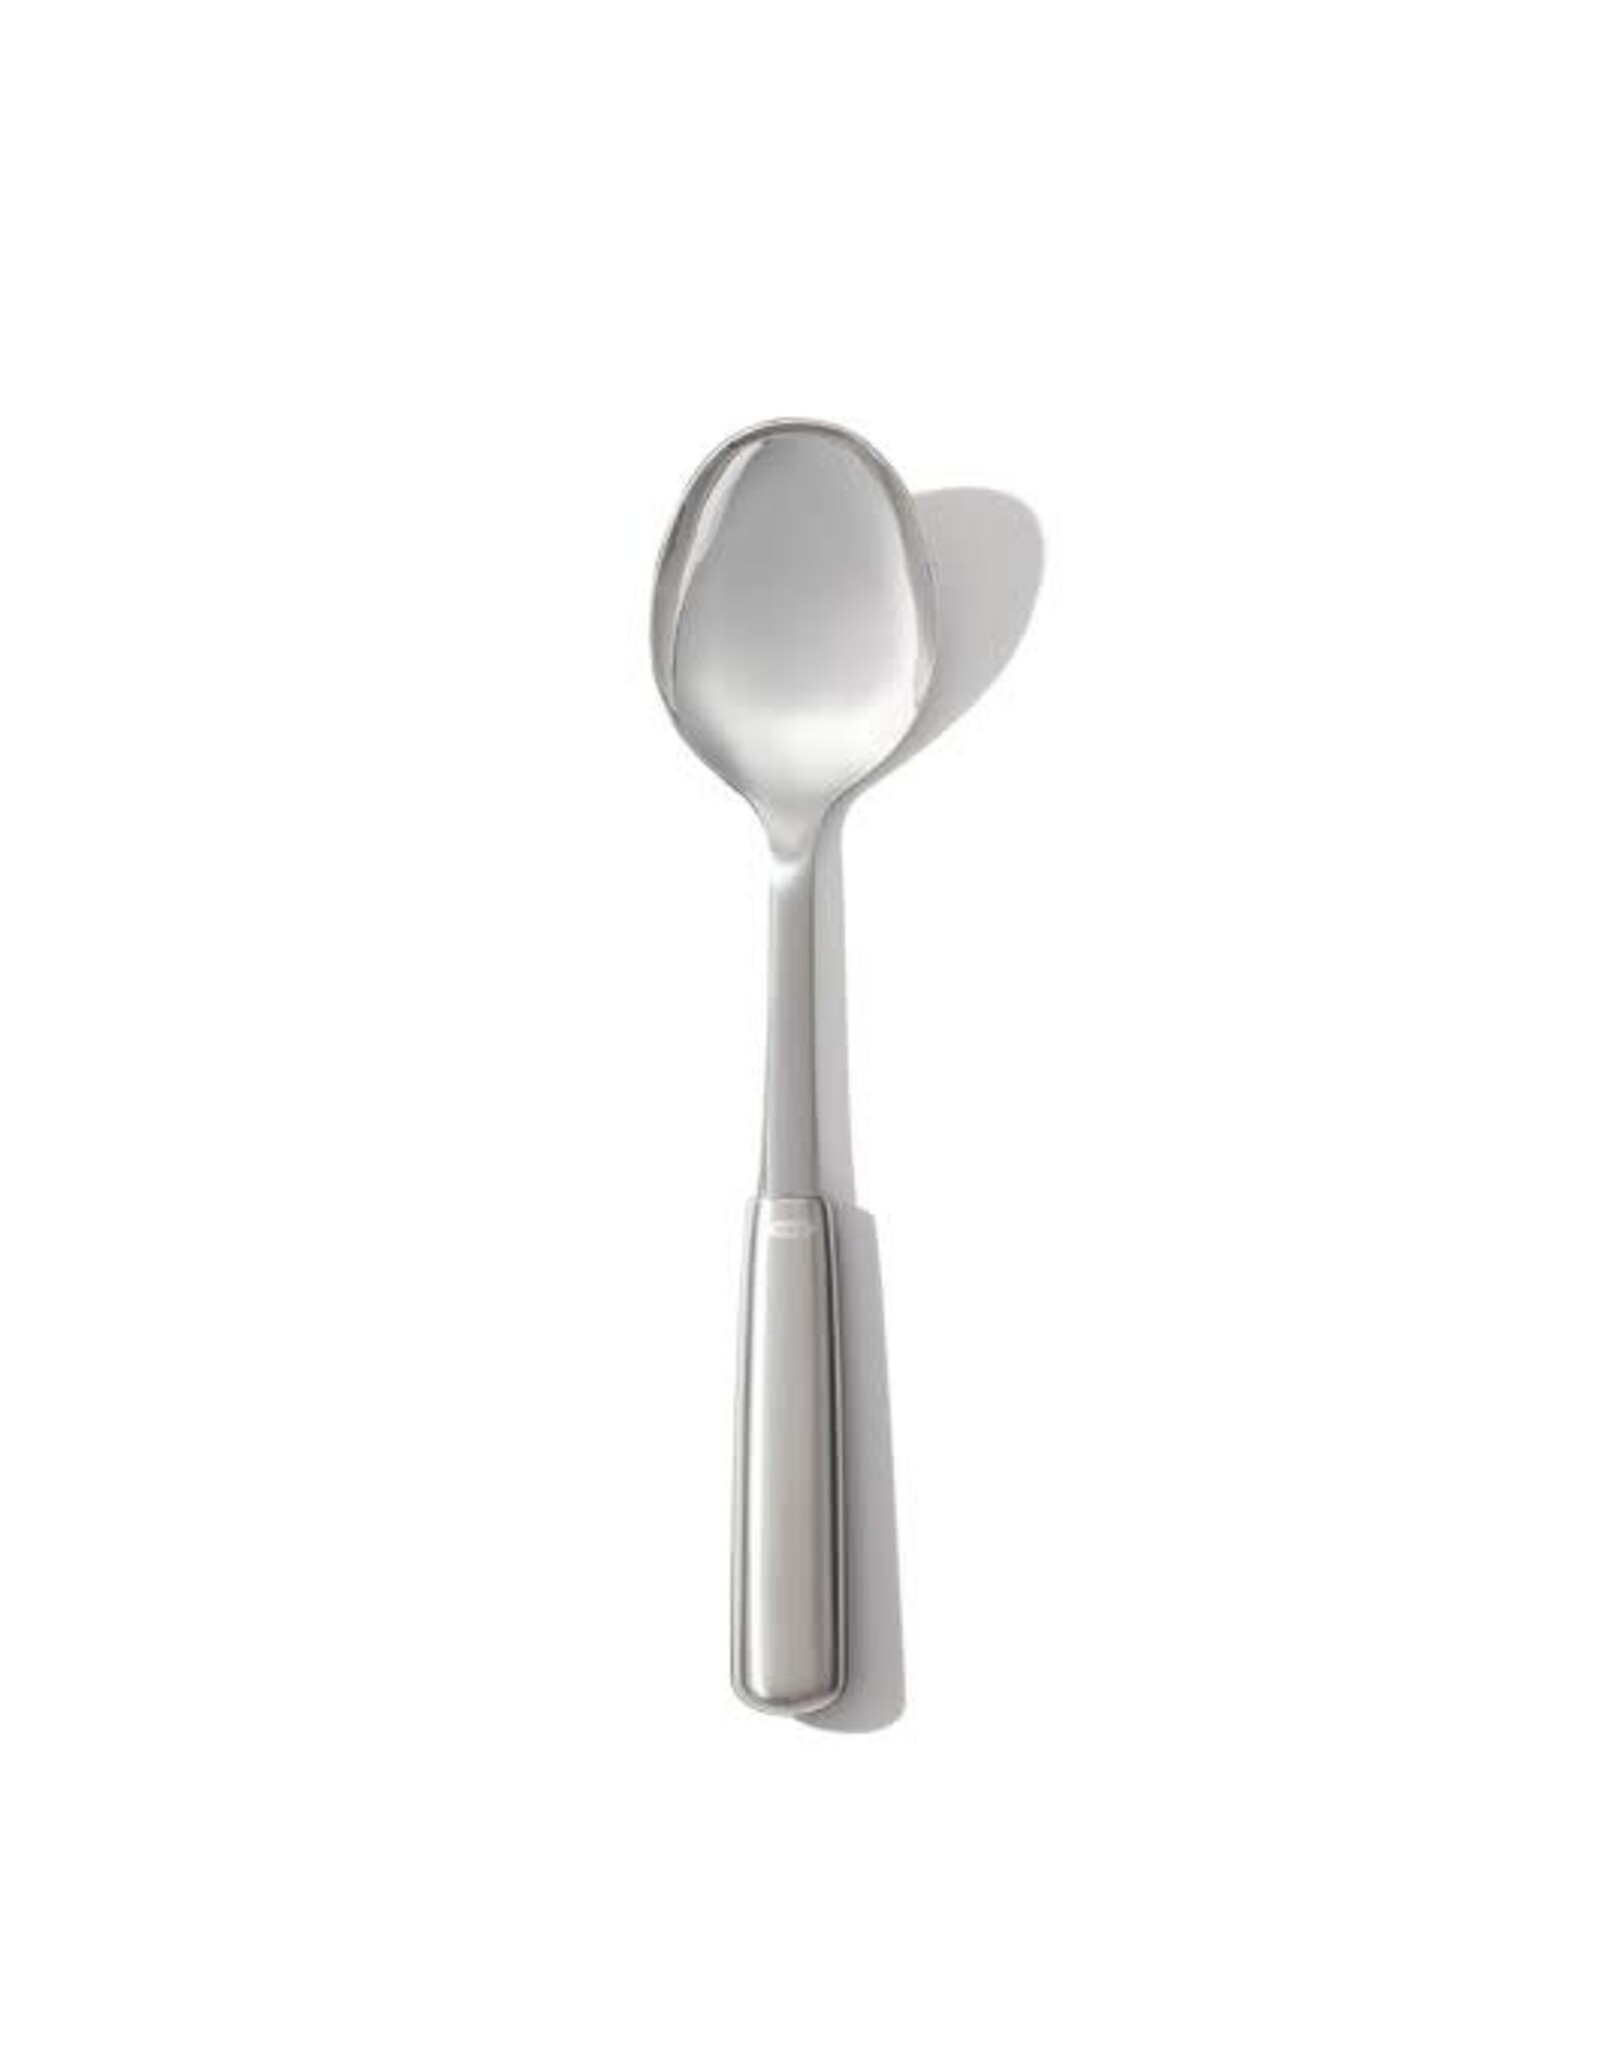 https://cdn.shoplightspeed.com/shops/635781/files/56590836/1600x2048x2/oxo-oxo-steel-cooking-spoon.jpg